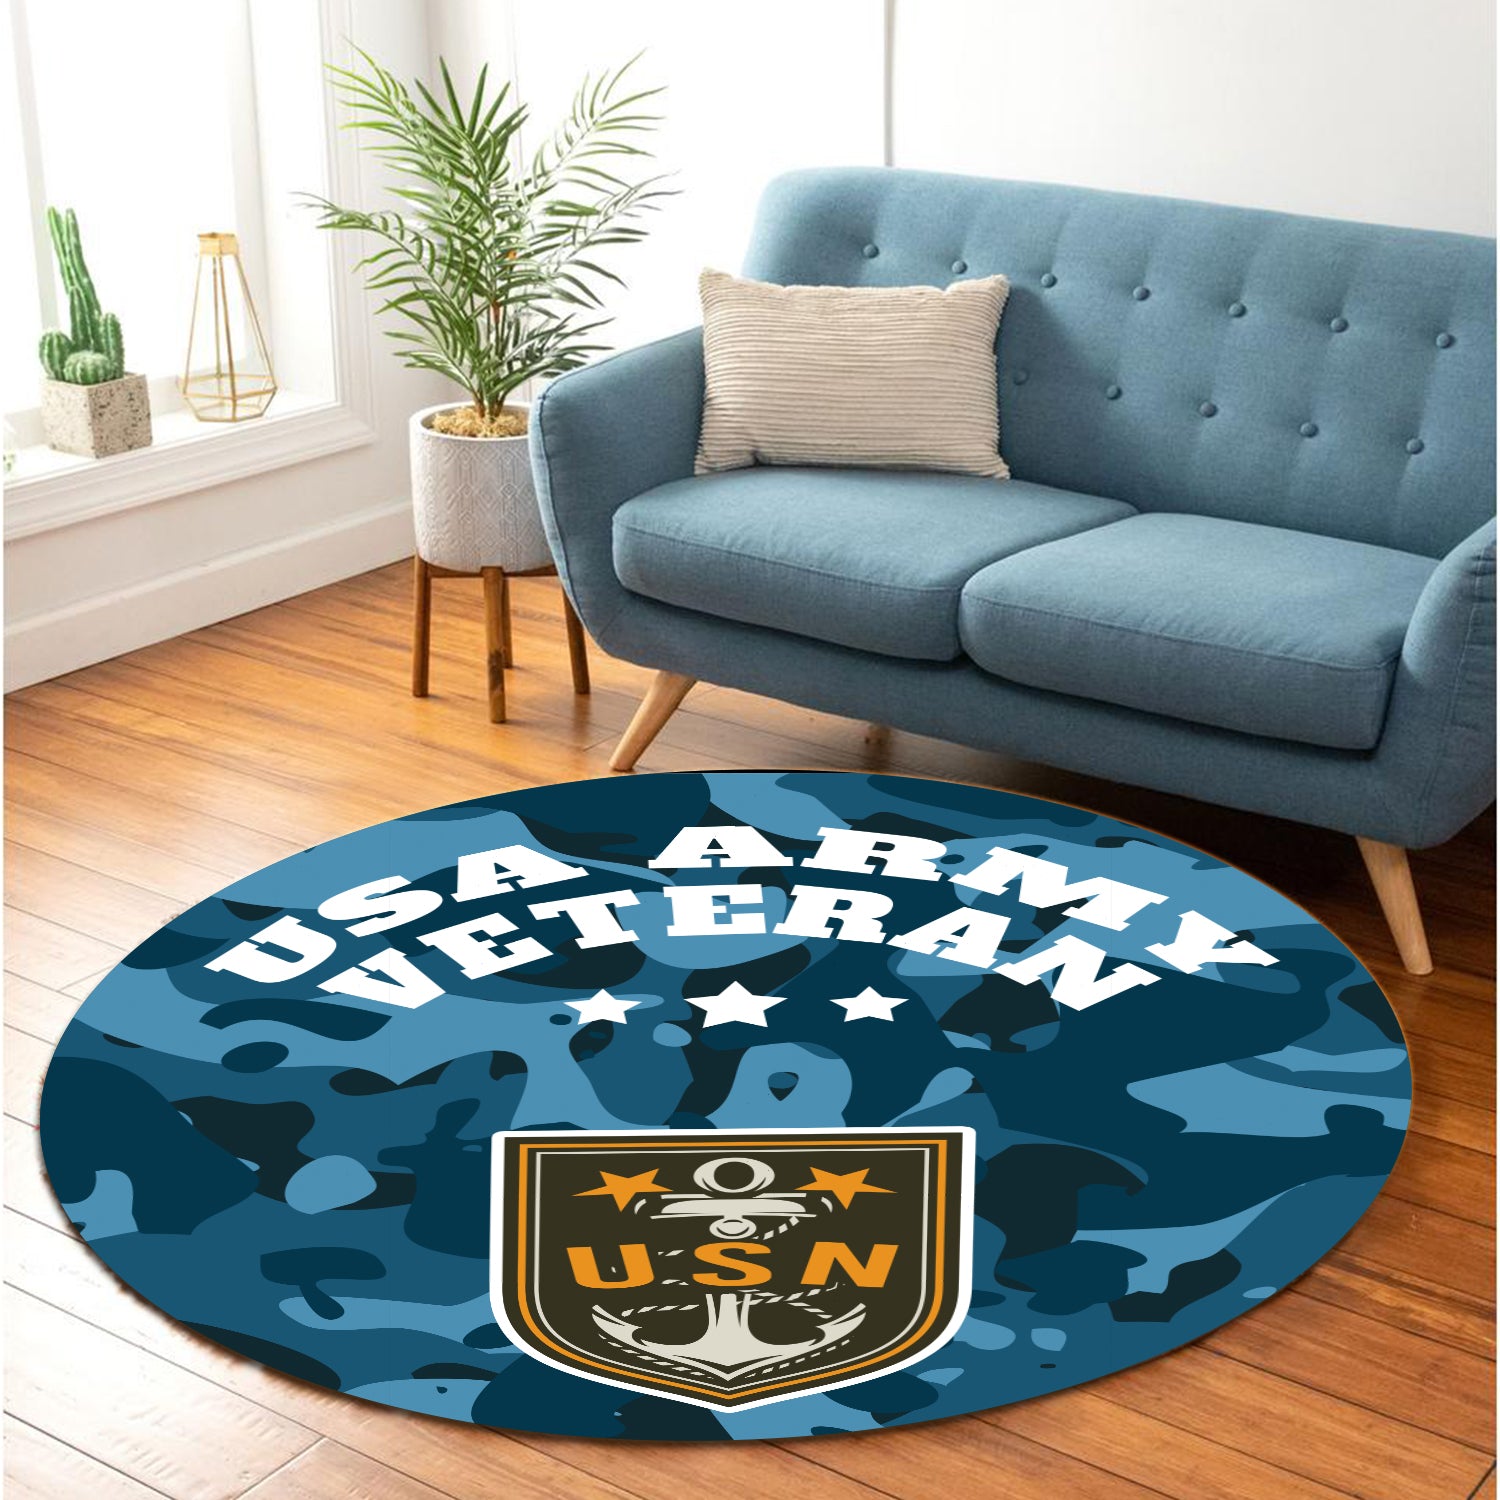 Usa Army Camo Round Carpet Rug Bedroom Livingroom Home Decor Nearkii